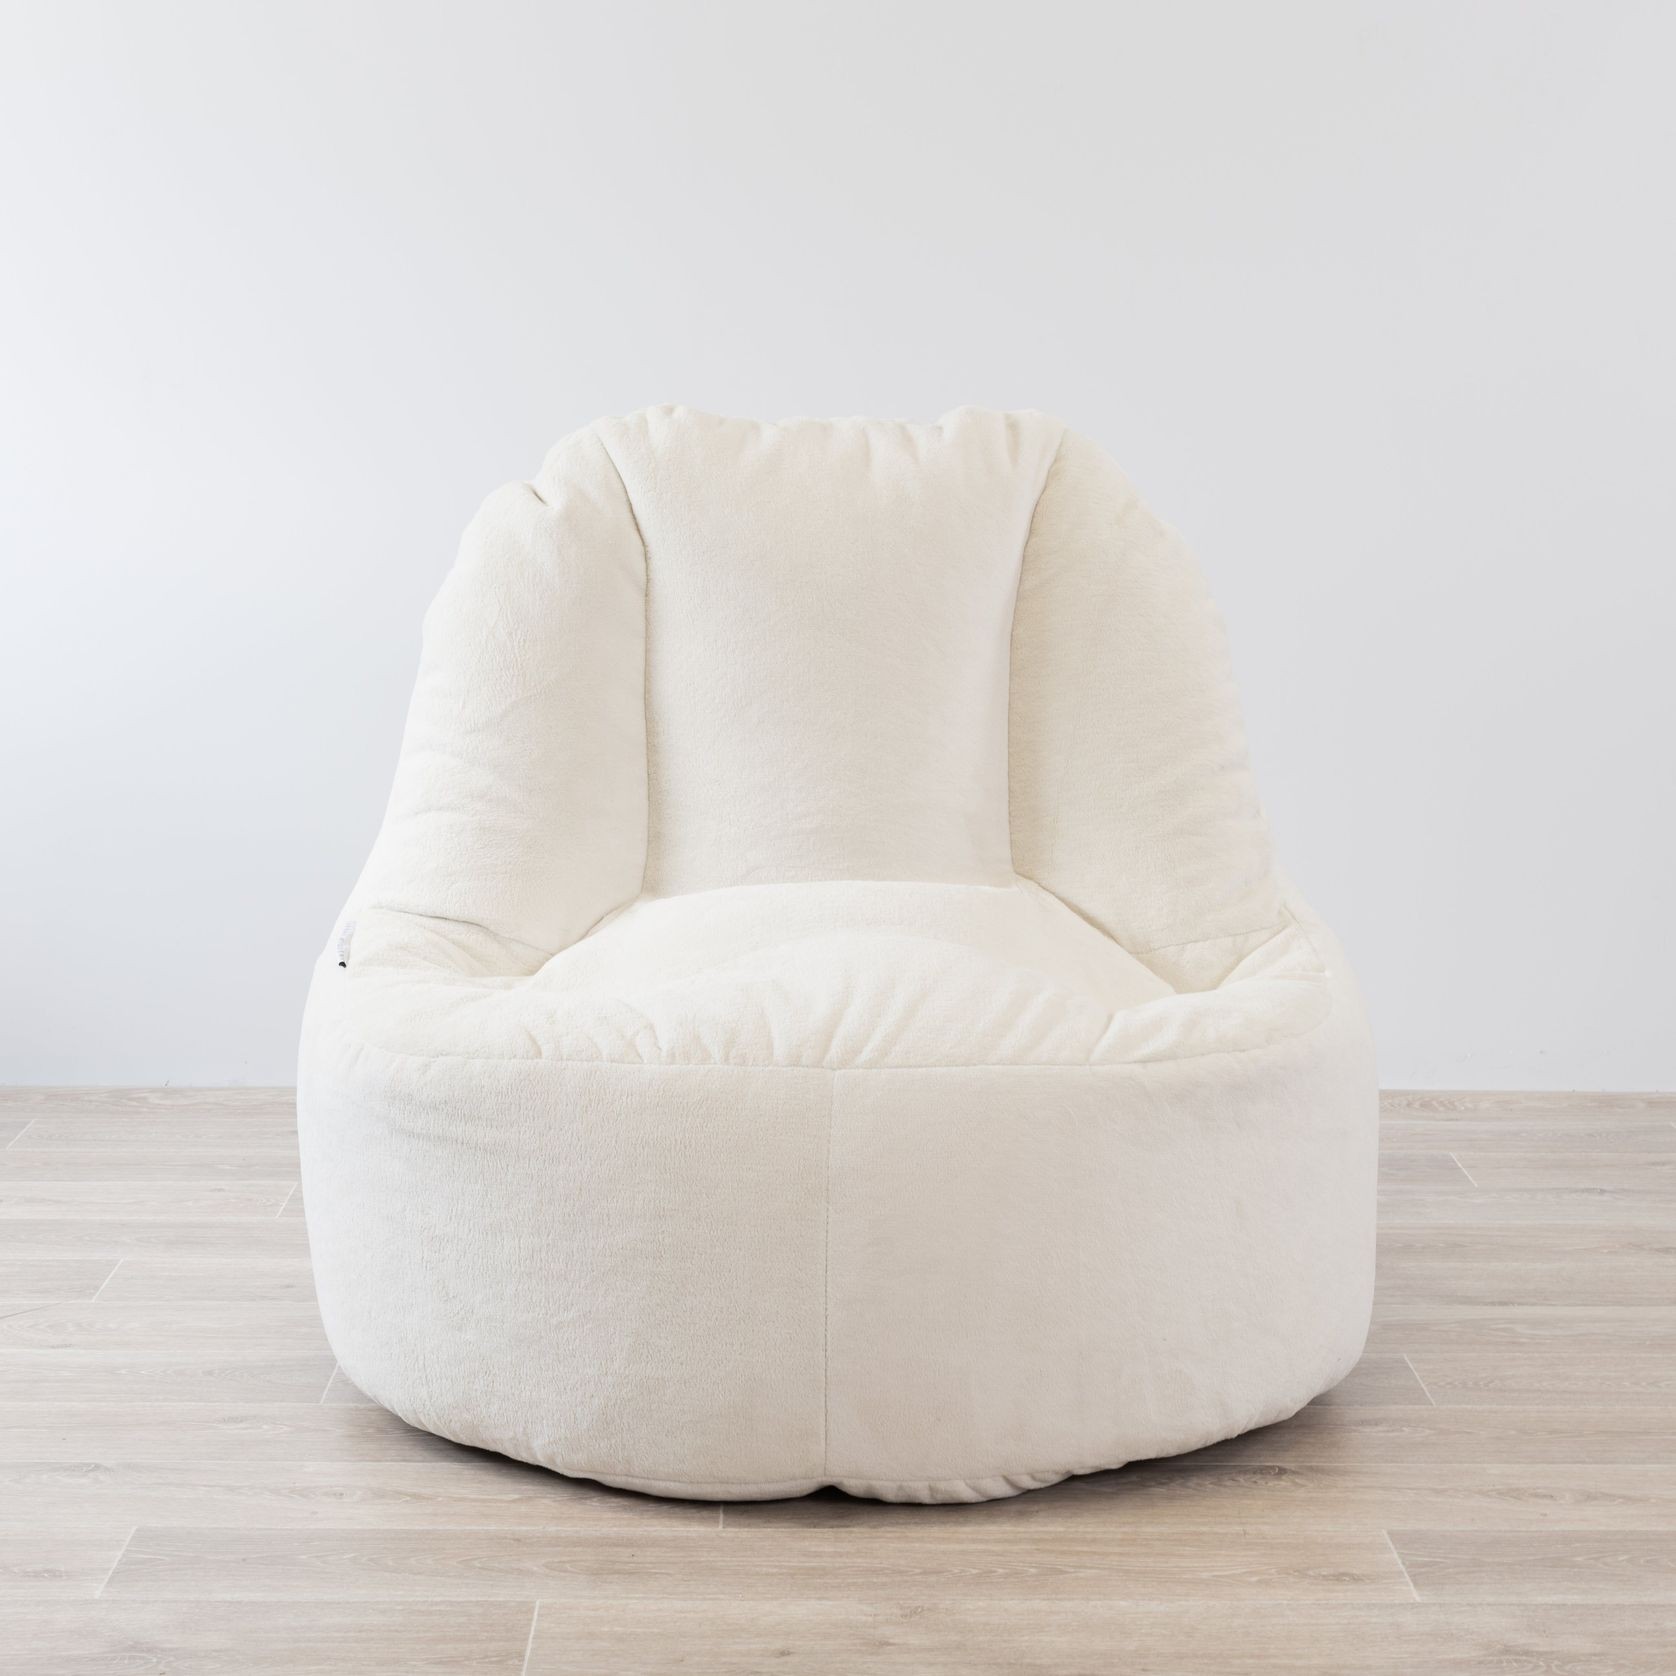 Plush Fur Lounger Bean Bag Chair - Cream gallery detail image